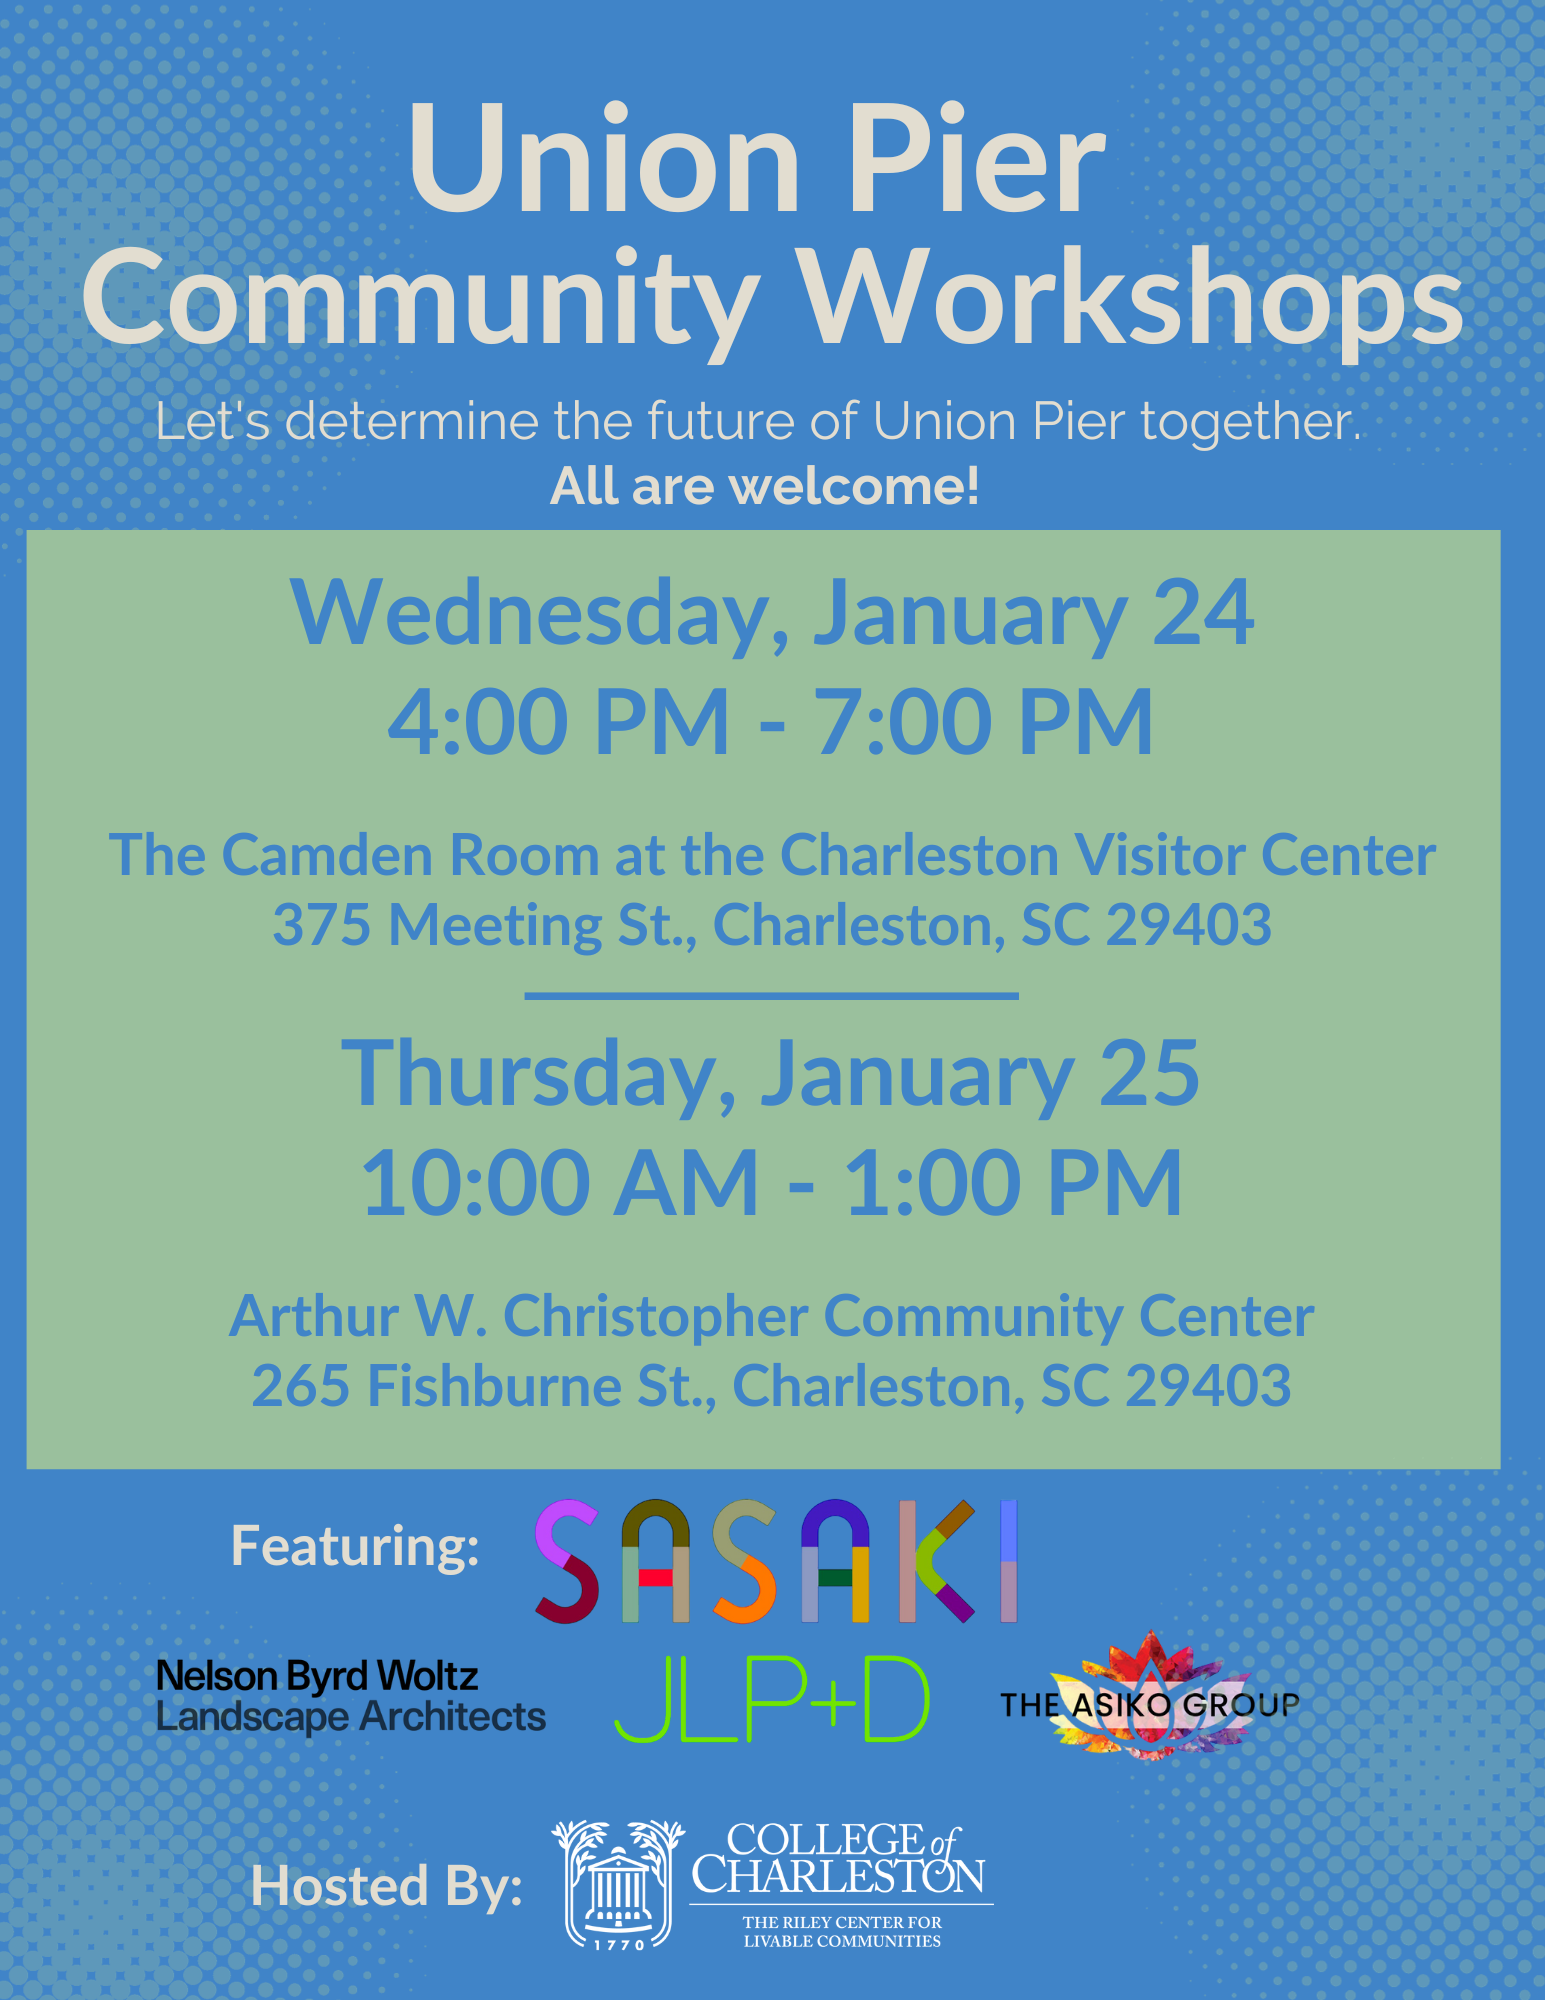 Union Pier Community Workshop flyer